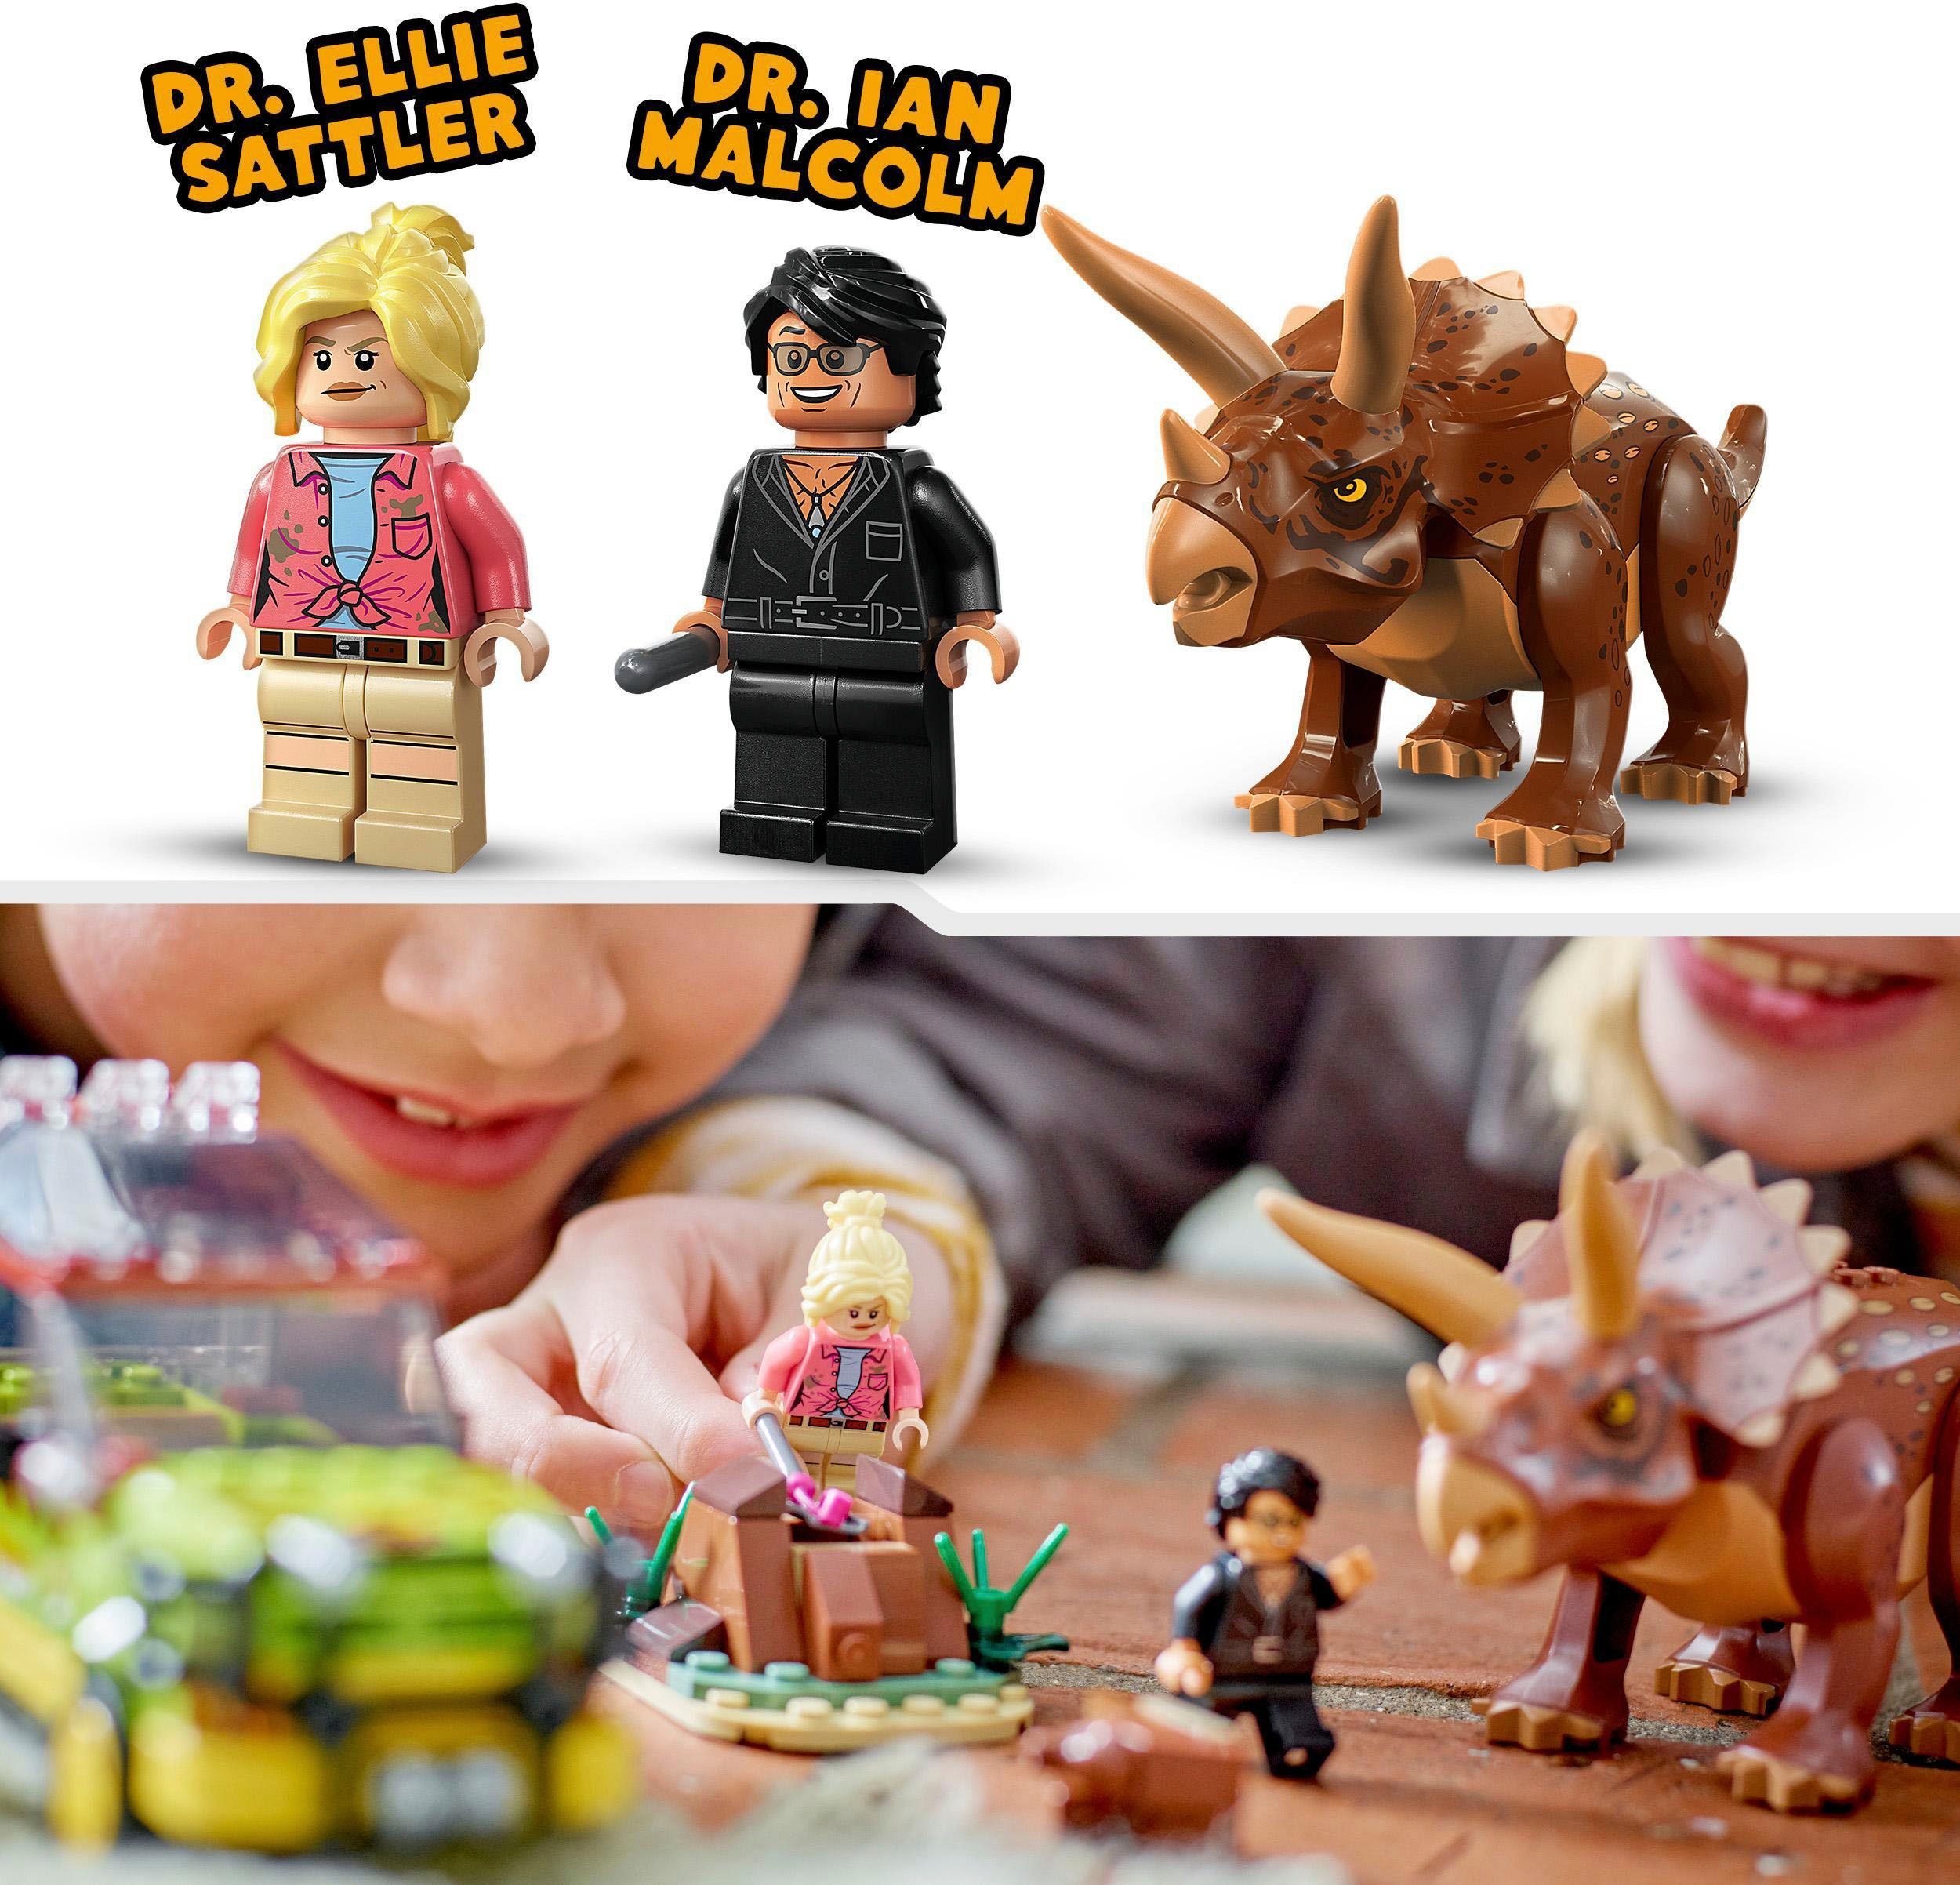 (281 Konstruktionsspielsteine LEGO® Made LEGO® Jurassic in Park, Europe (76959), St), Triceratops-Forschung